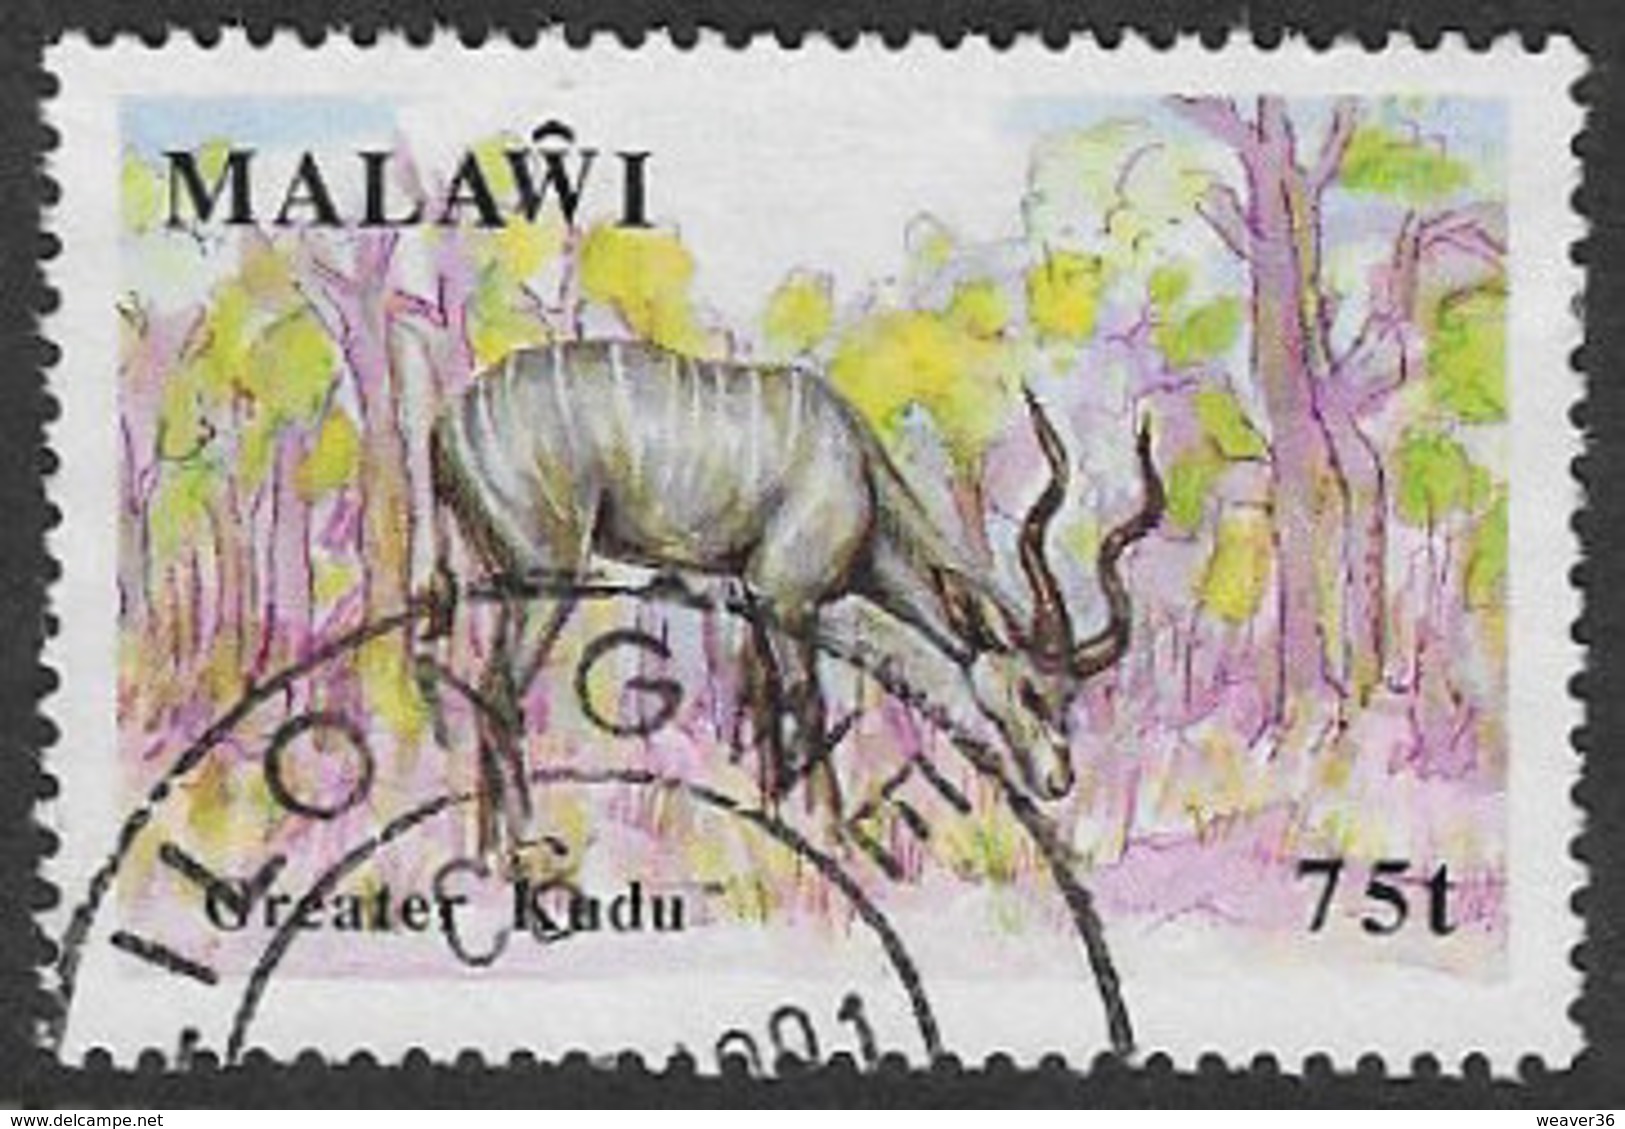 Malawi SG860 1991 Wildlife 75t Good/fine Used [37/30832/2D] - Malawi (1964-...)